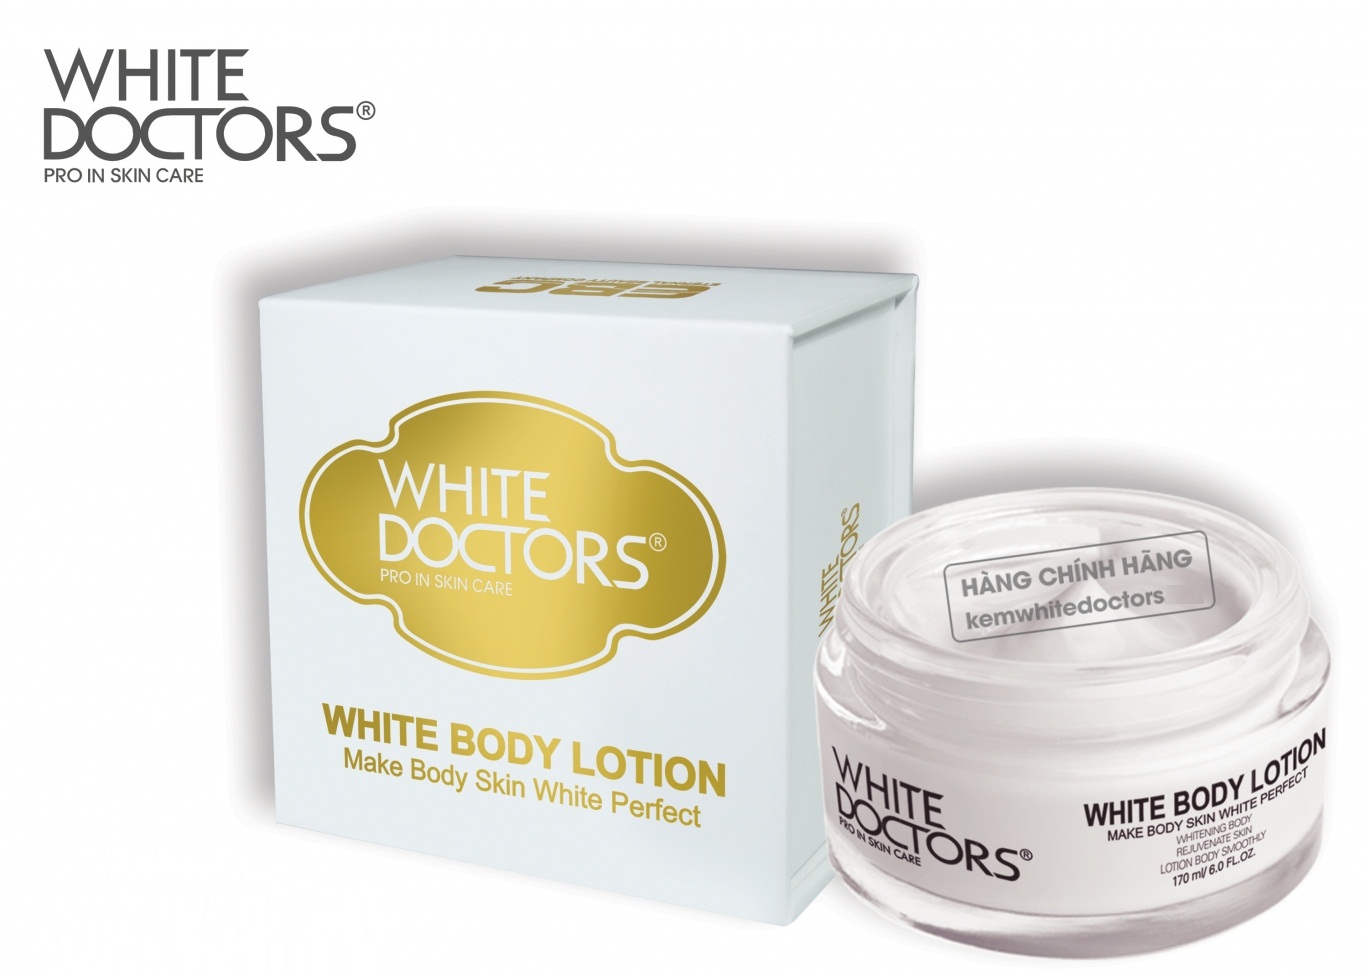 Kem dưỡng trắng da toàn thân White Doctors Body Lotion dành cho mọi loại da